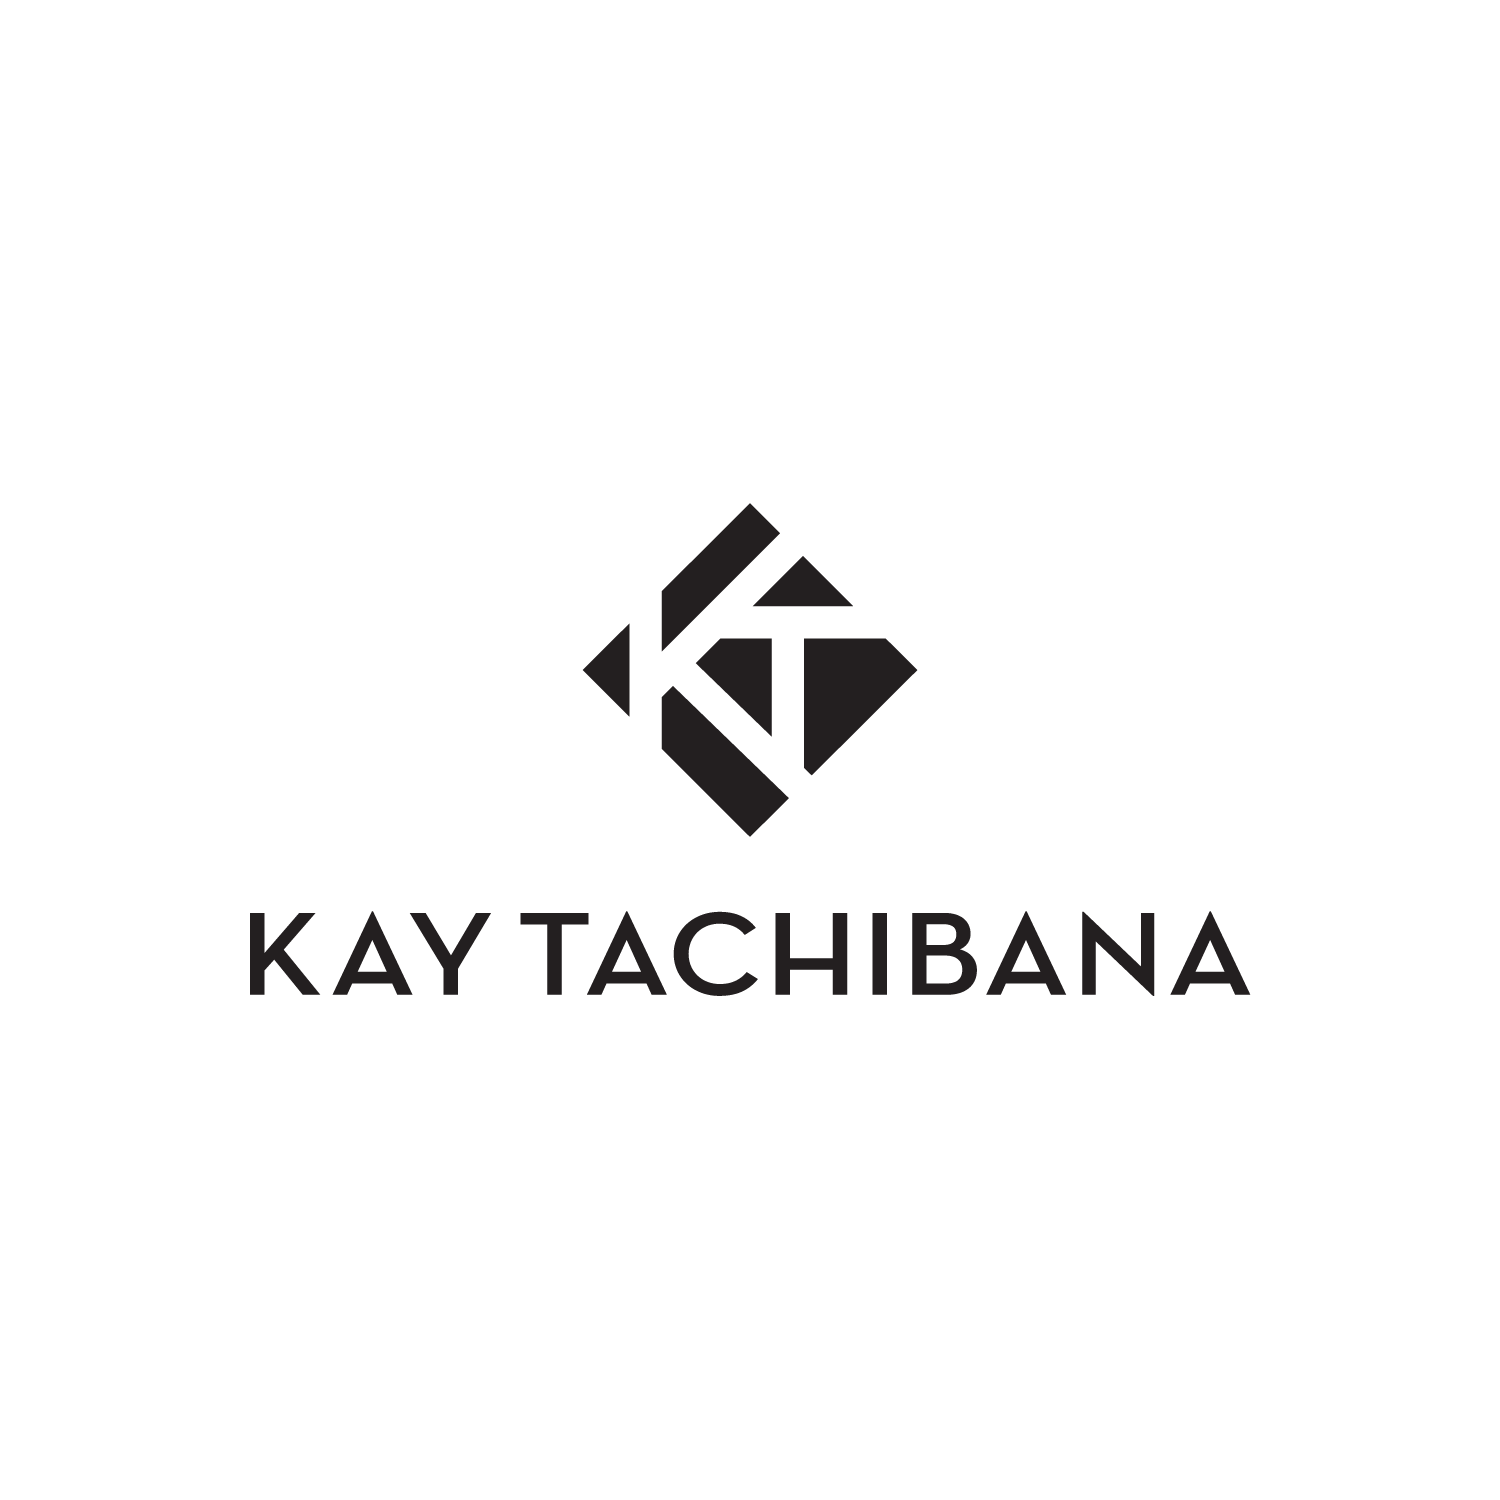 Kay Tachibana Design